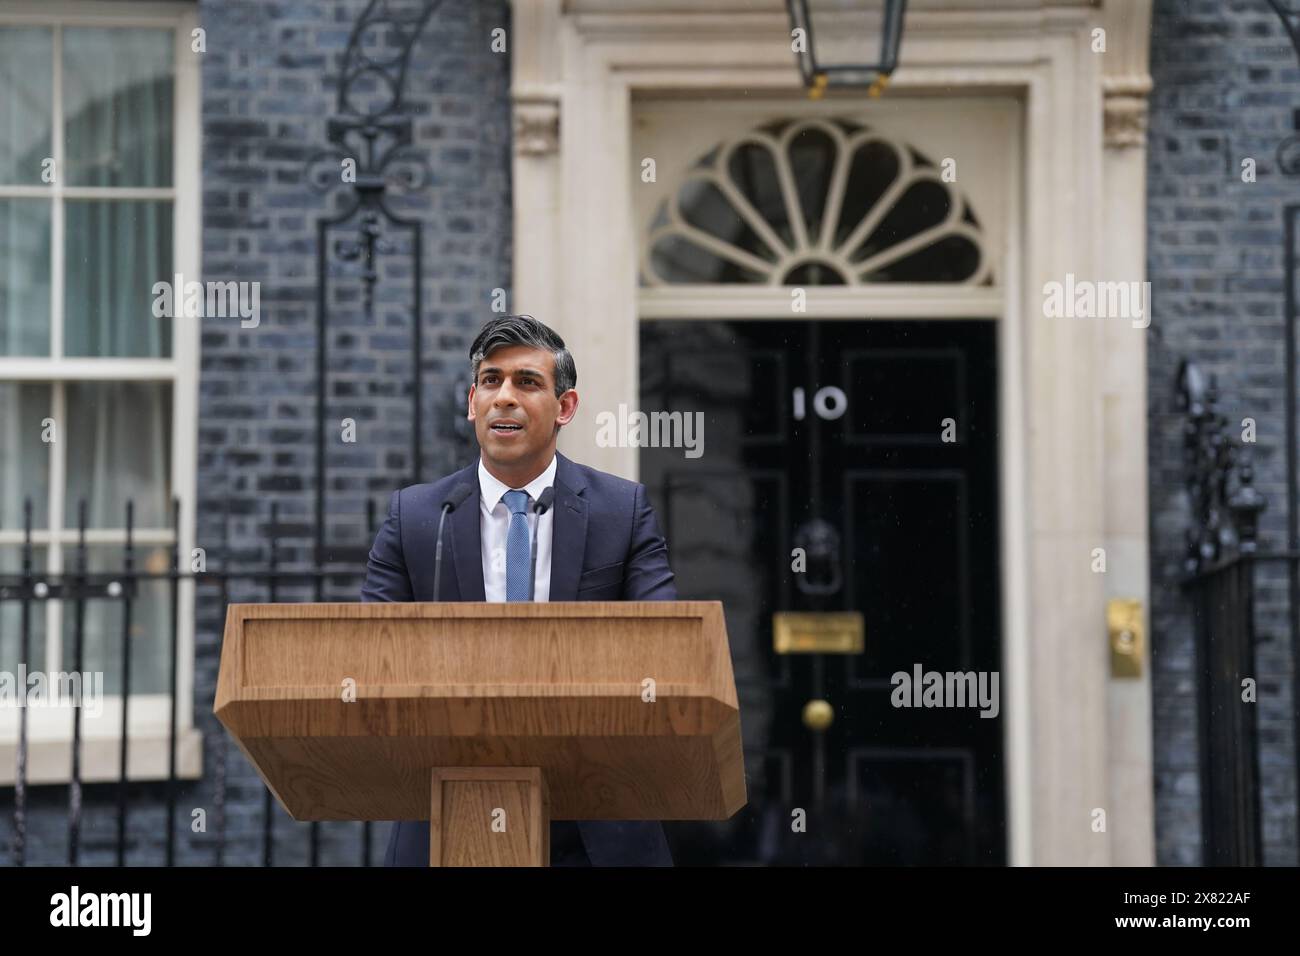 Premierminister Rishi Sunak gibt eine Erklärung vor der Downing Street 10 in London ab, nachdem er eine Parlamentswahl für den 4. Juli einberufen hatte. Bilddatum: Mittwoch, 22. Mai 2024. Stockfoto